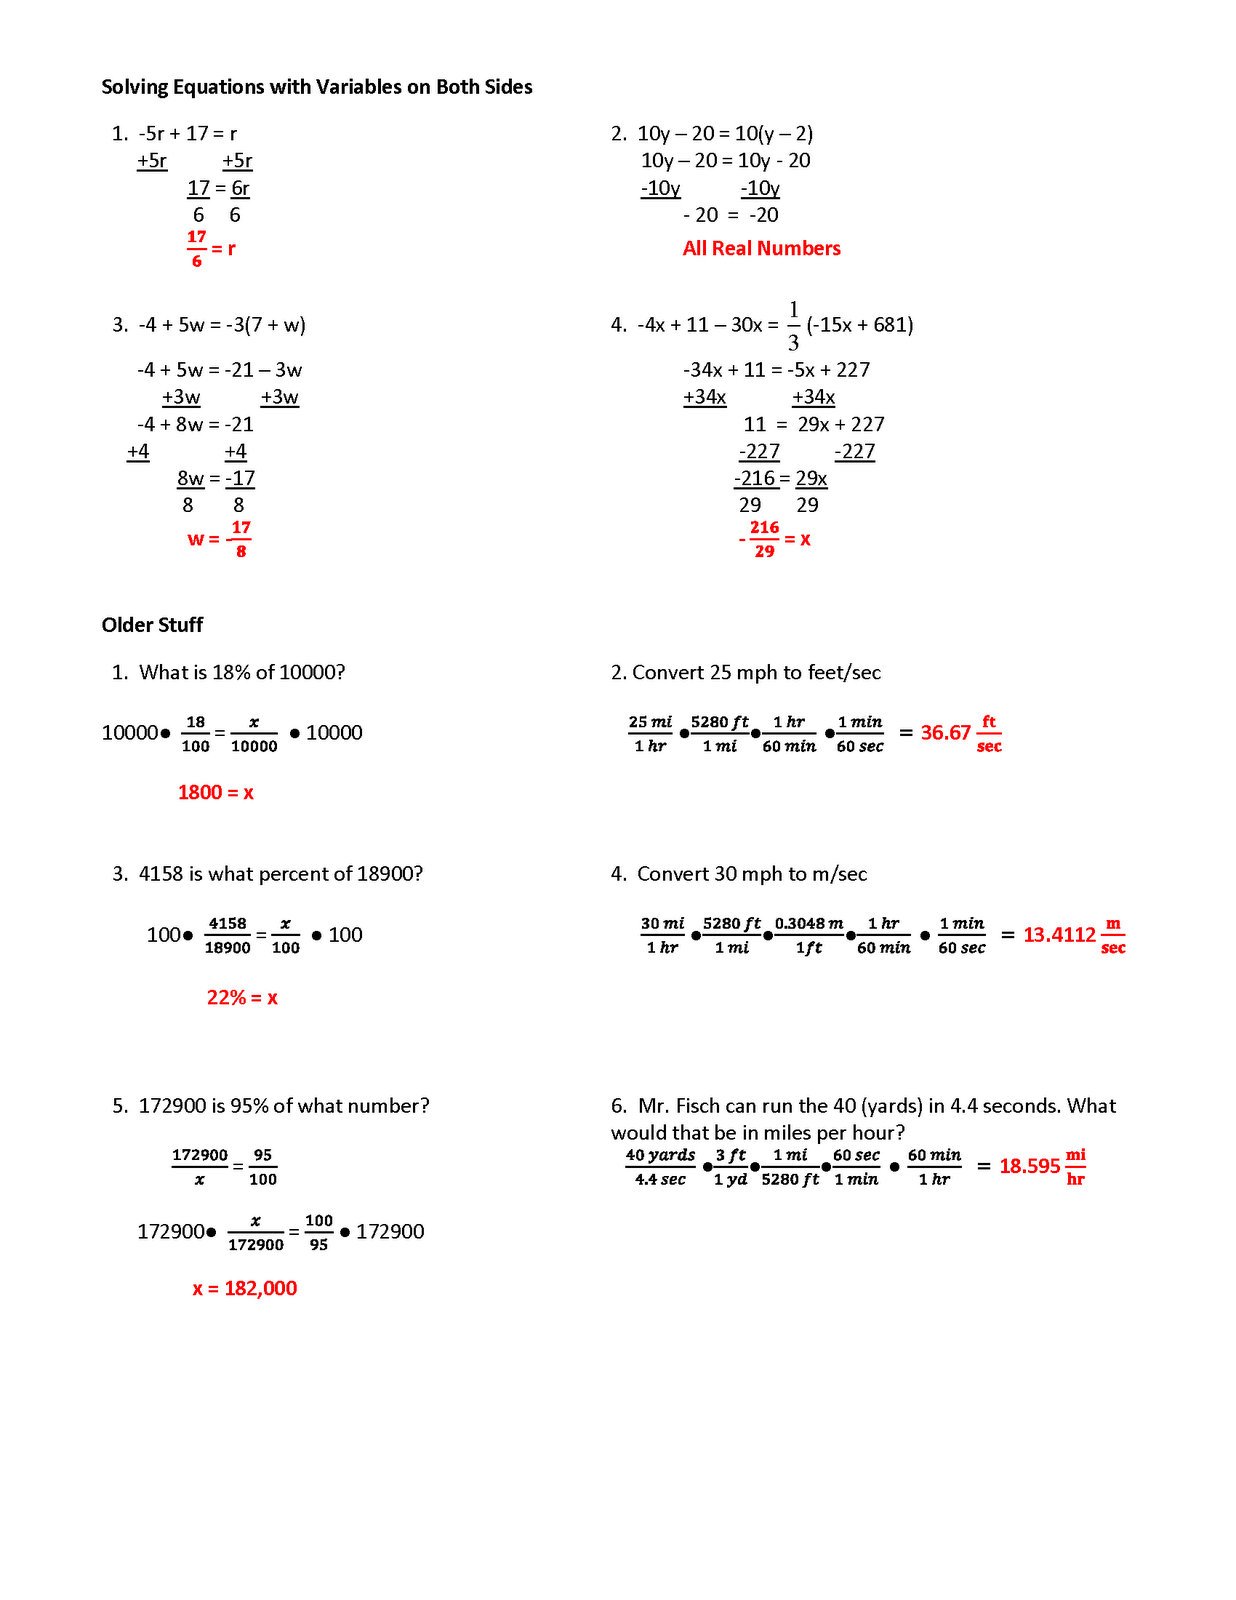 Algebra 1 Linear Equation Worksheets